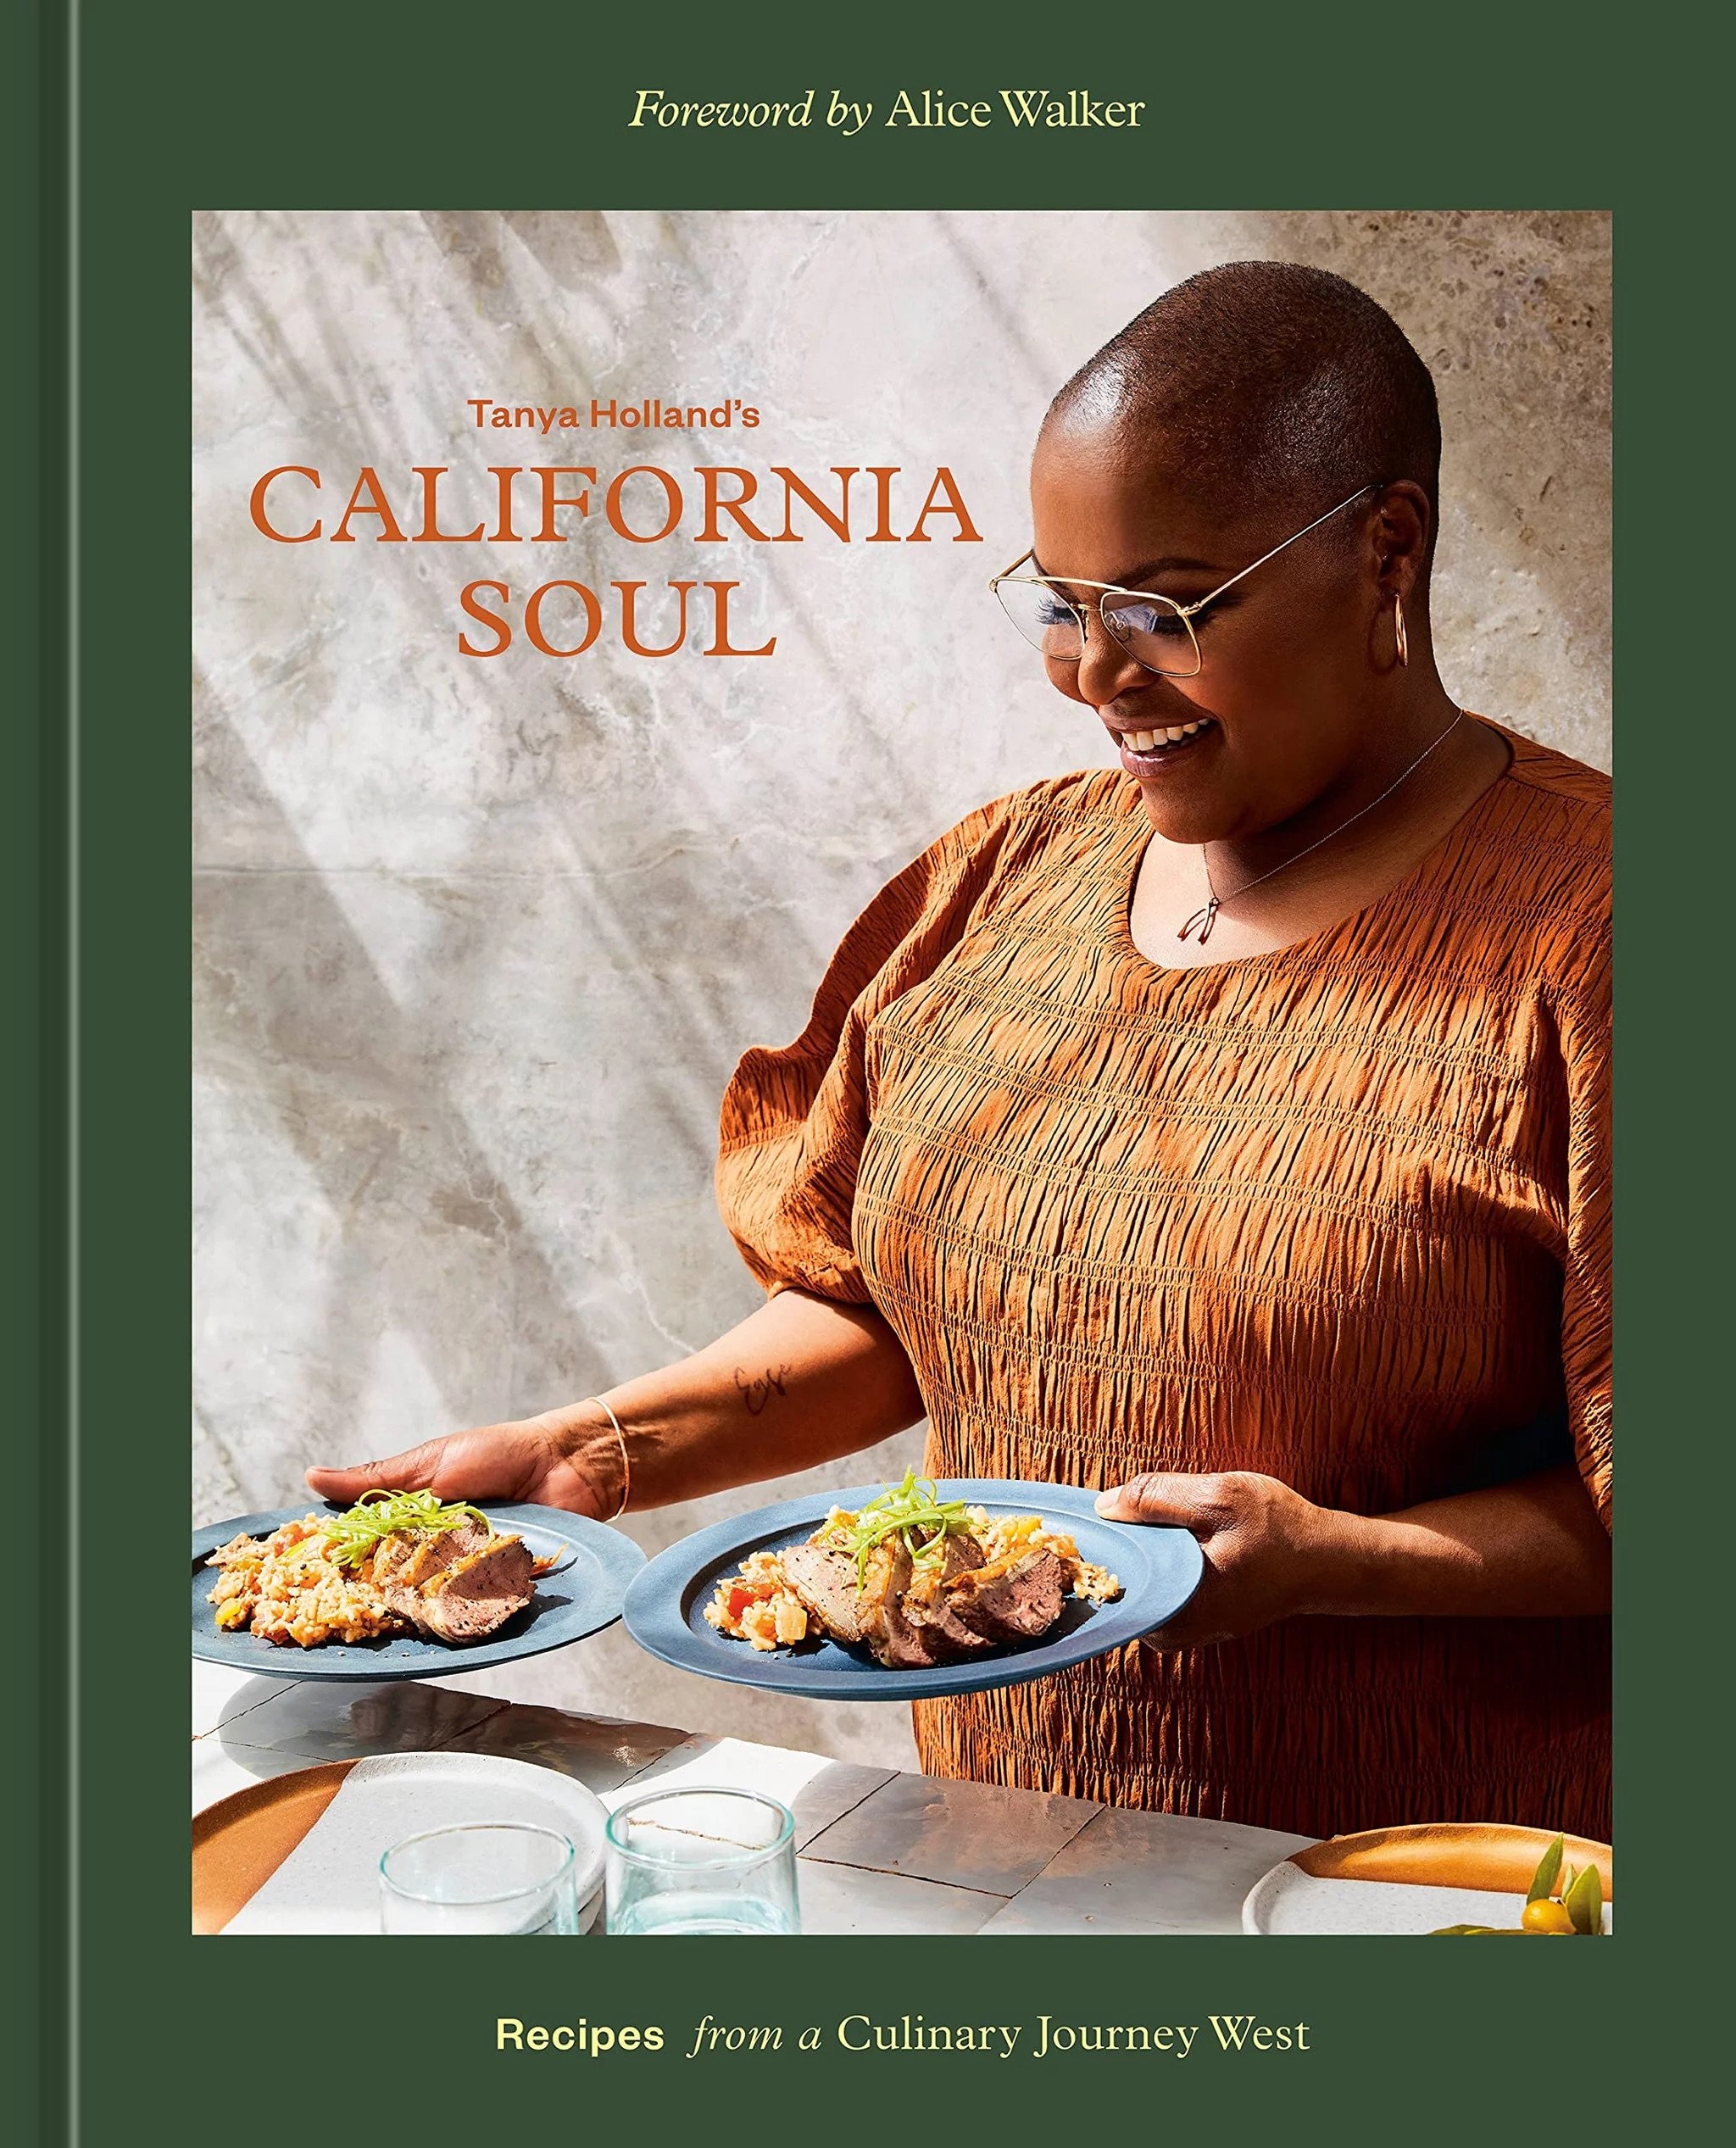 tanya-holland-california-soul-cookbook.jpg